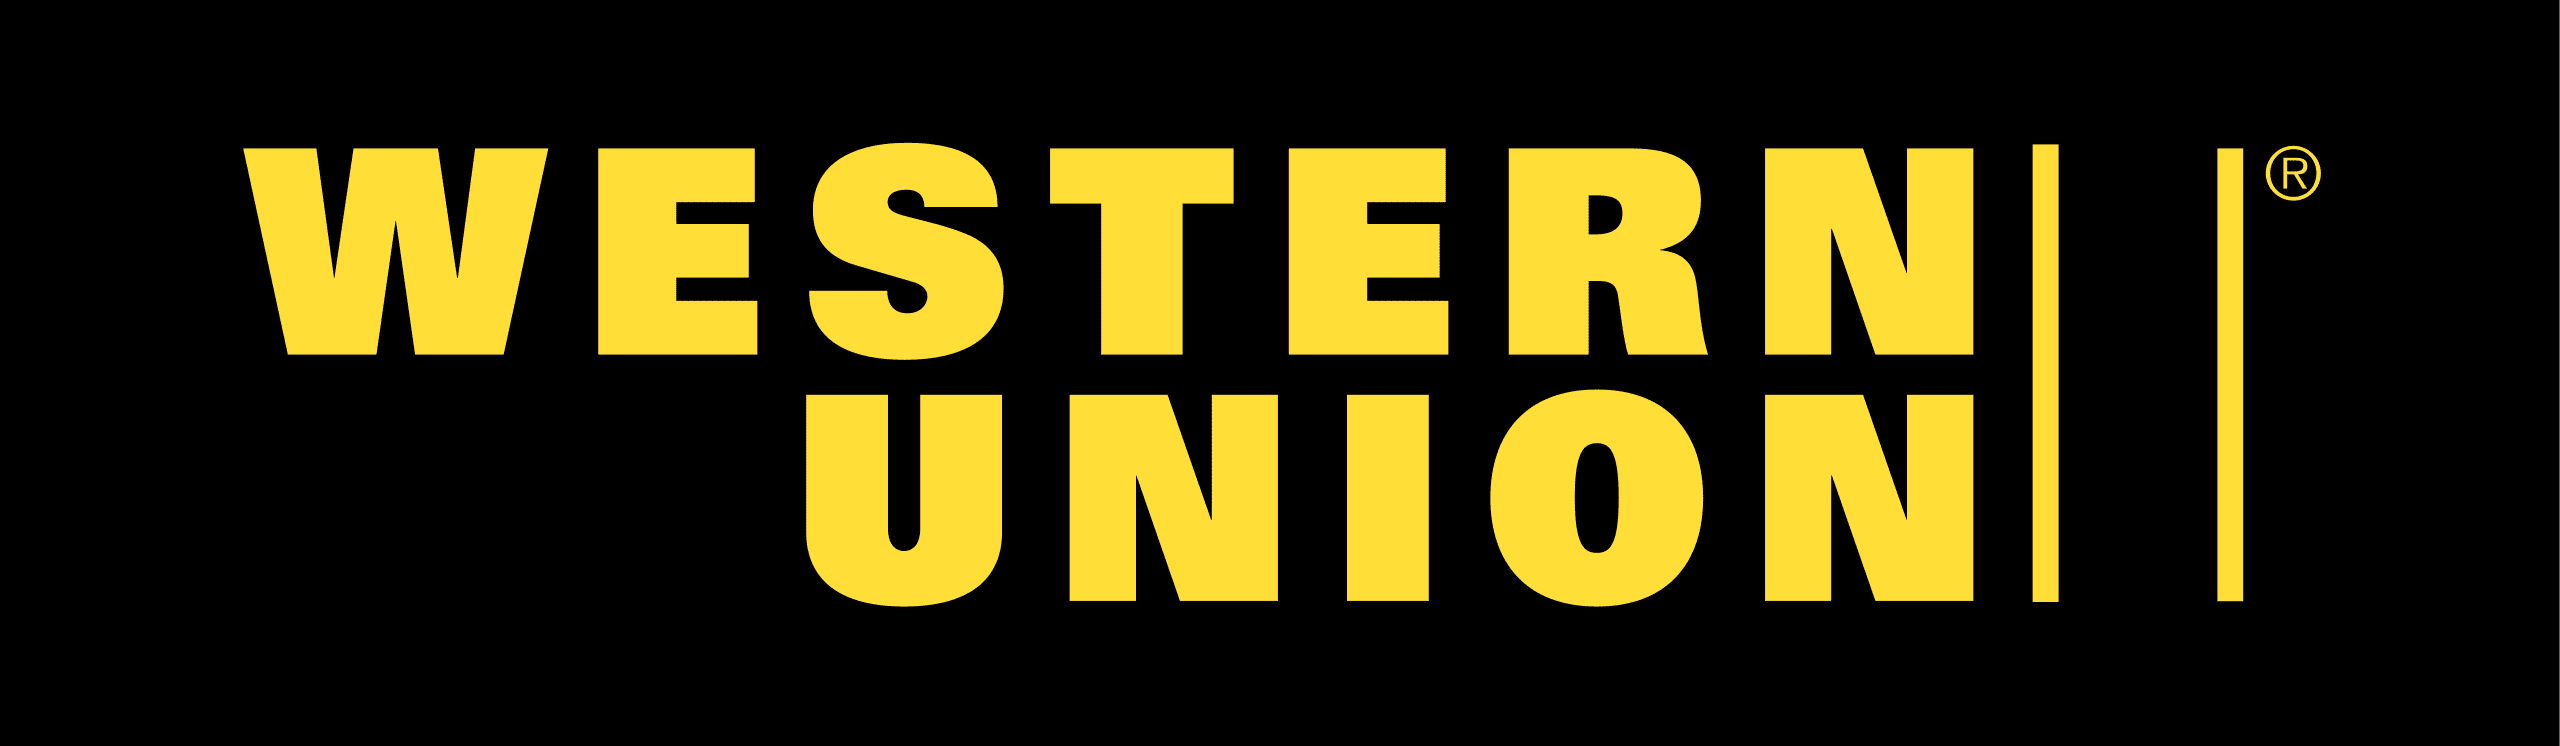 Western_Union_logo.svg